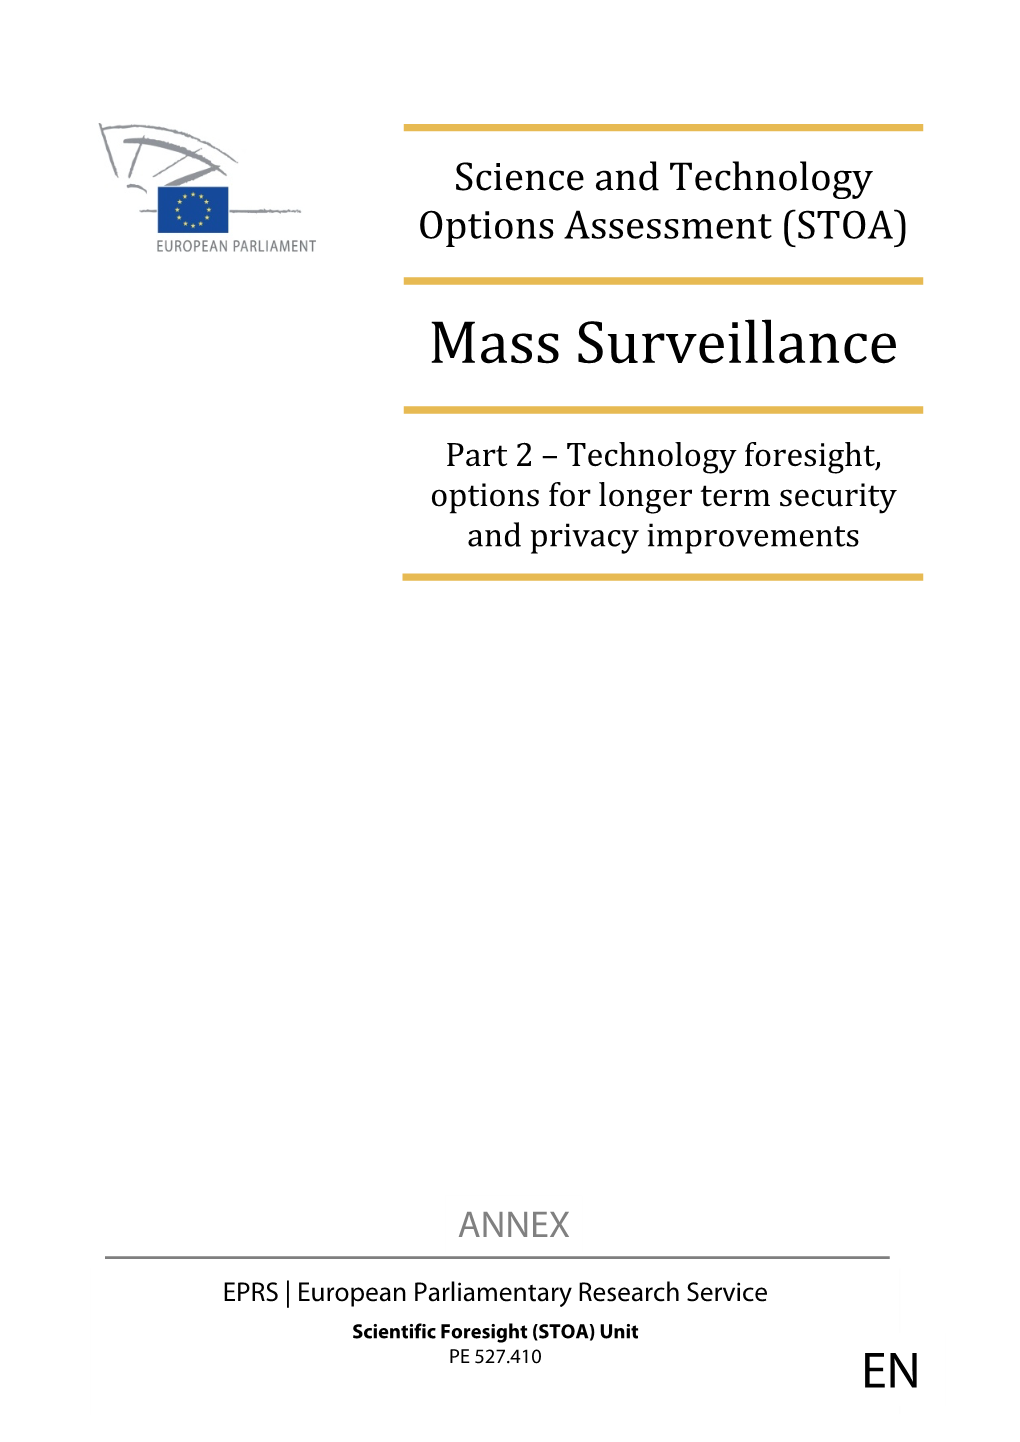 Annex Mass Surveillance Part 2